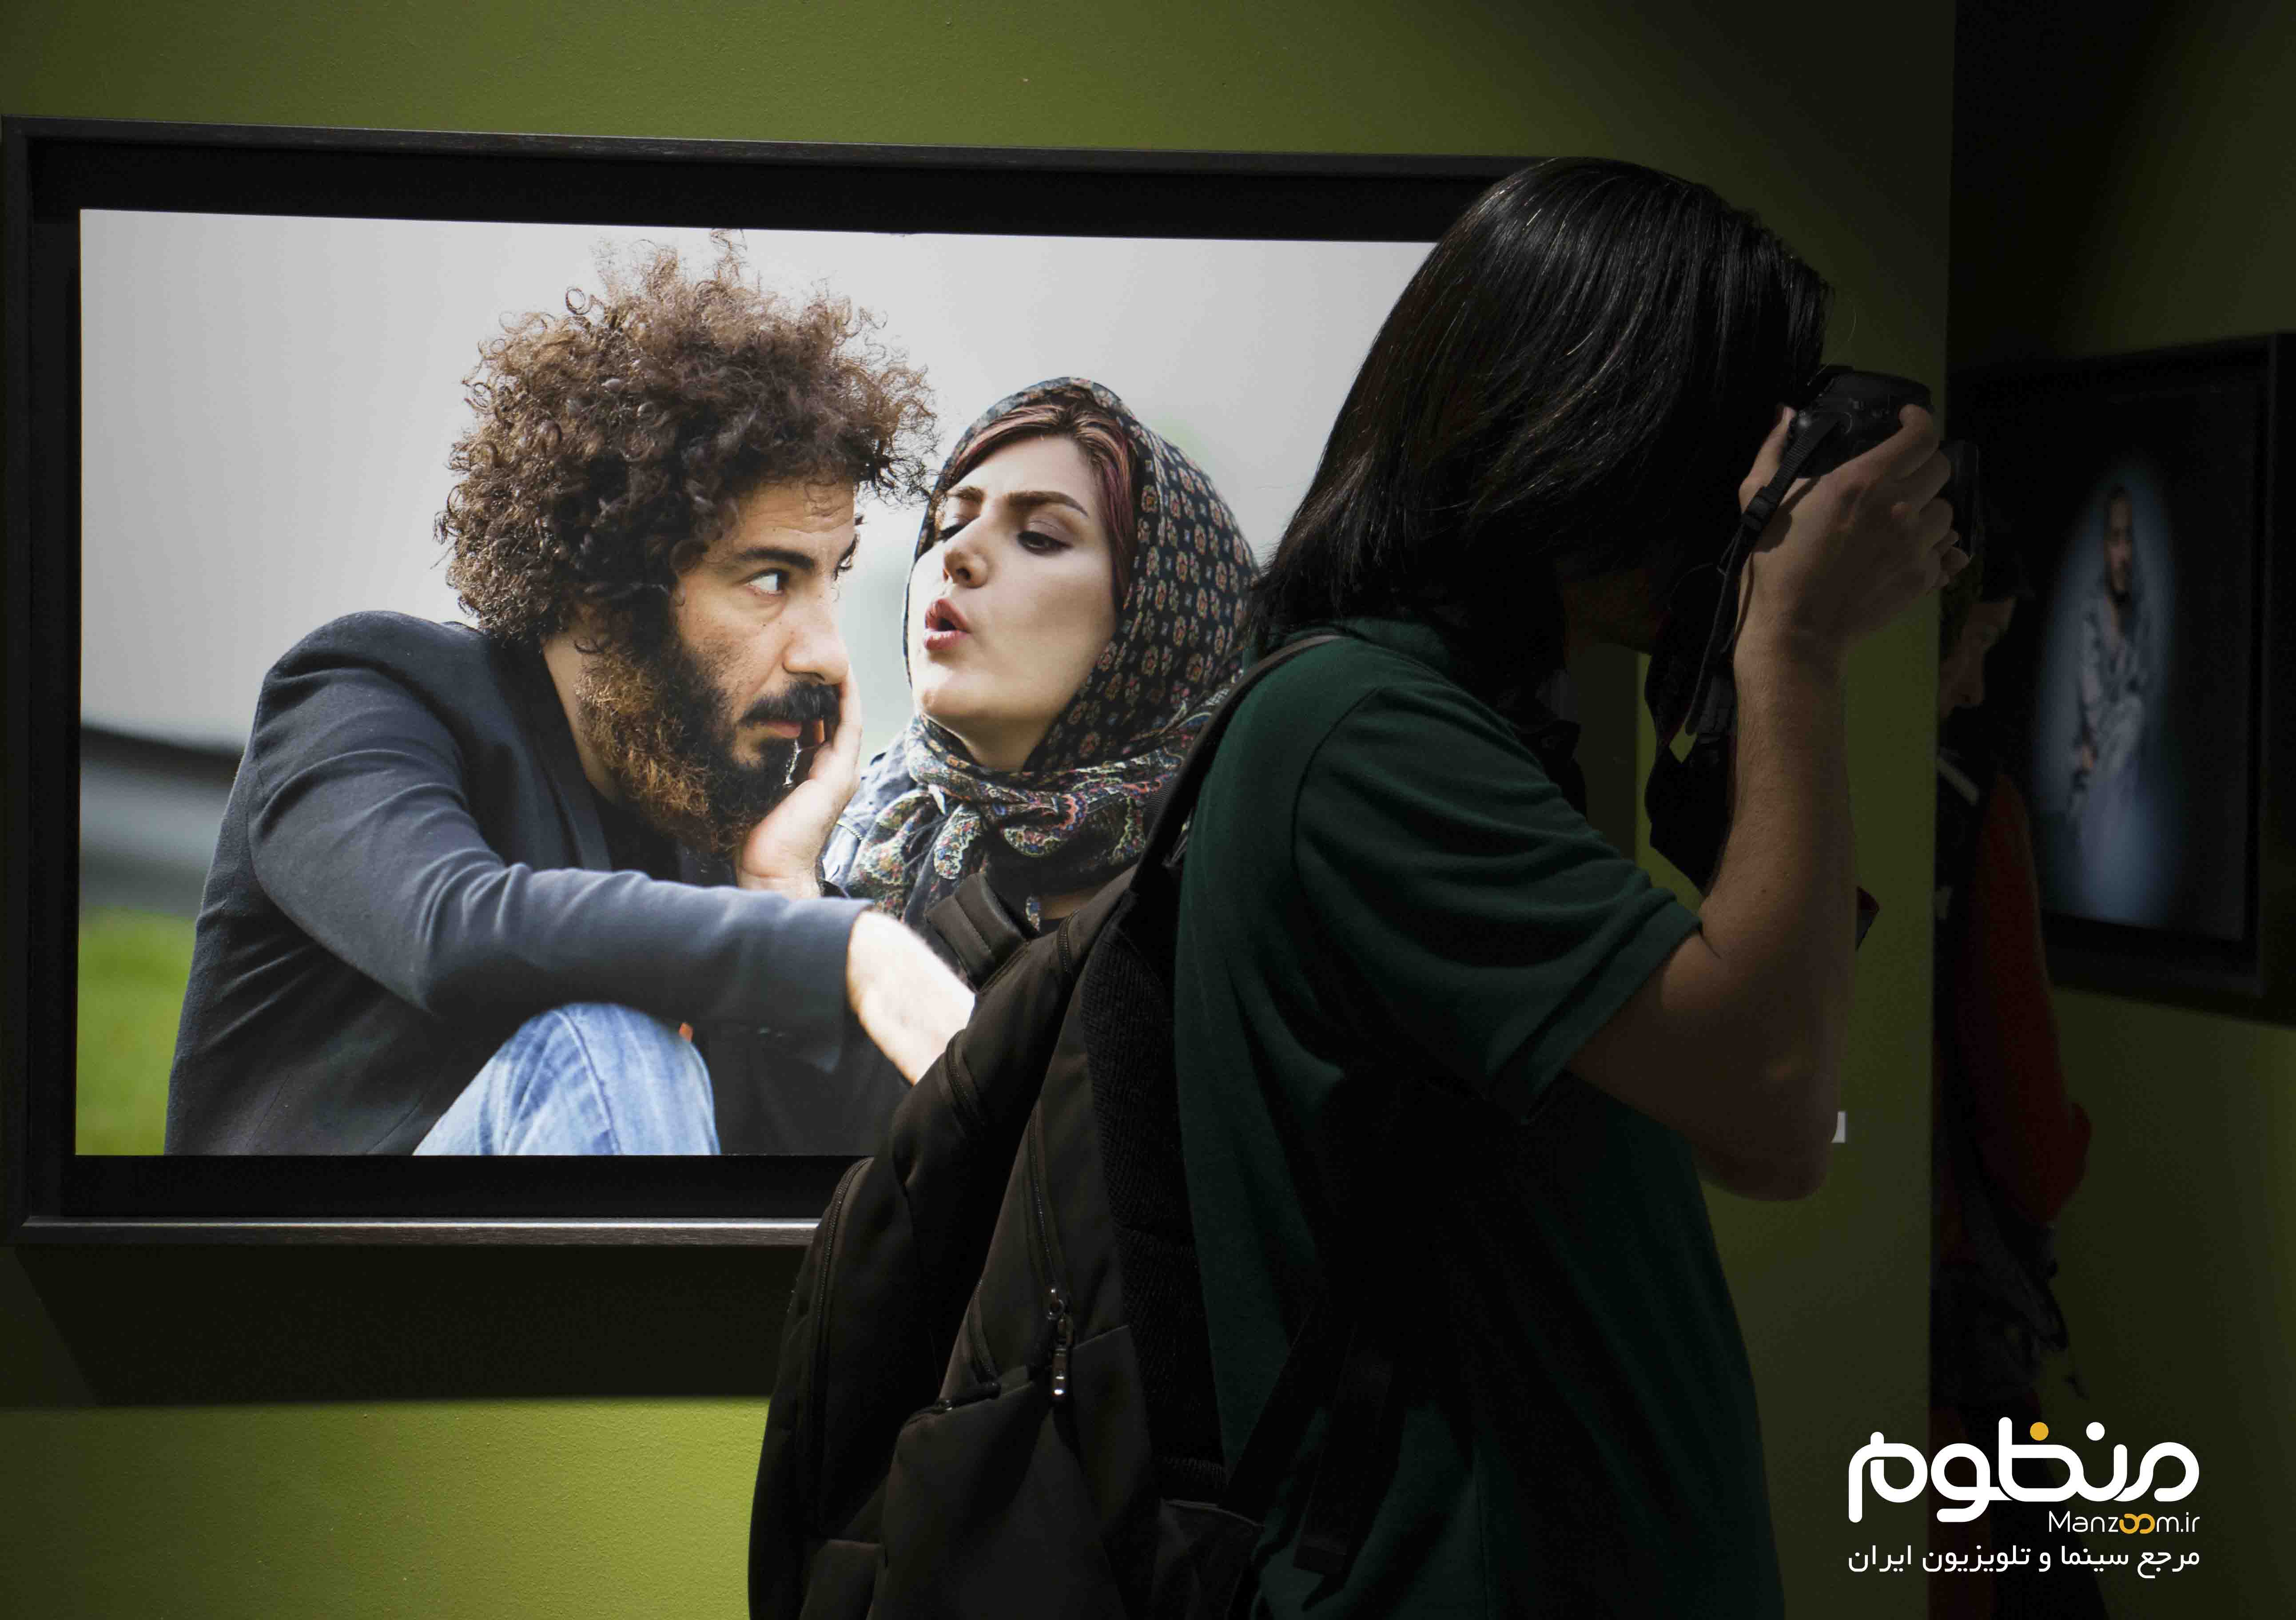 نوید محمدزاده در افتتاحیه گالری عکس «لانتوری»